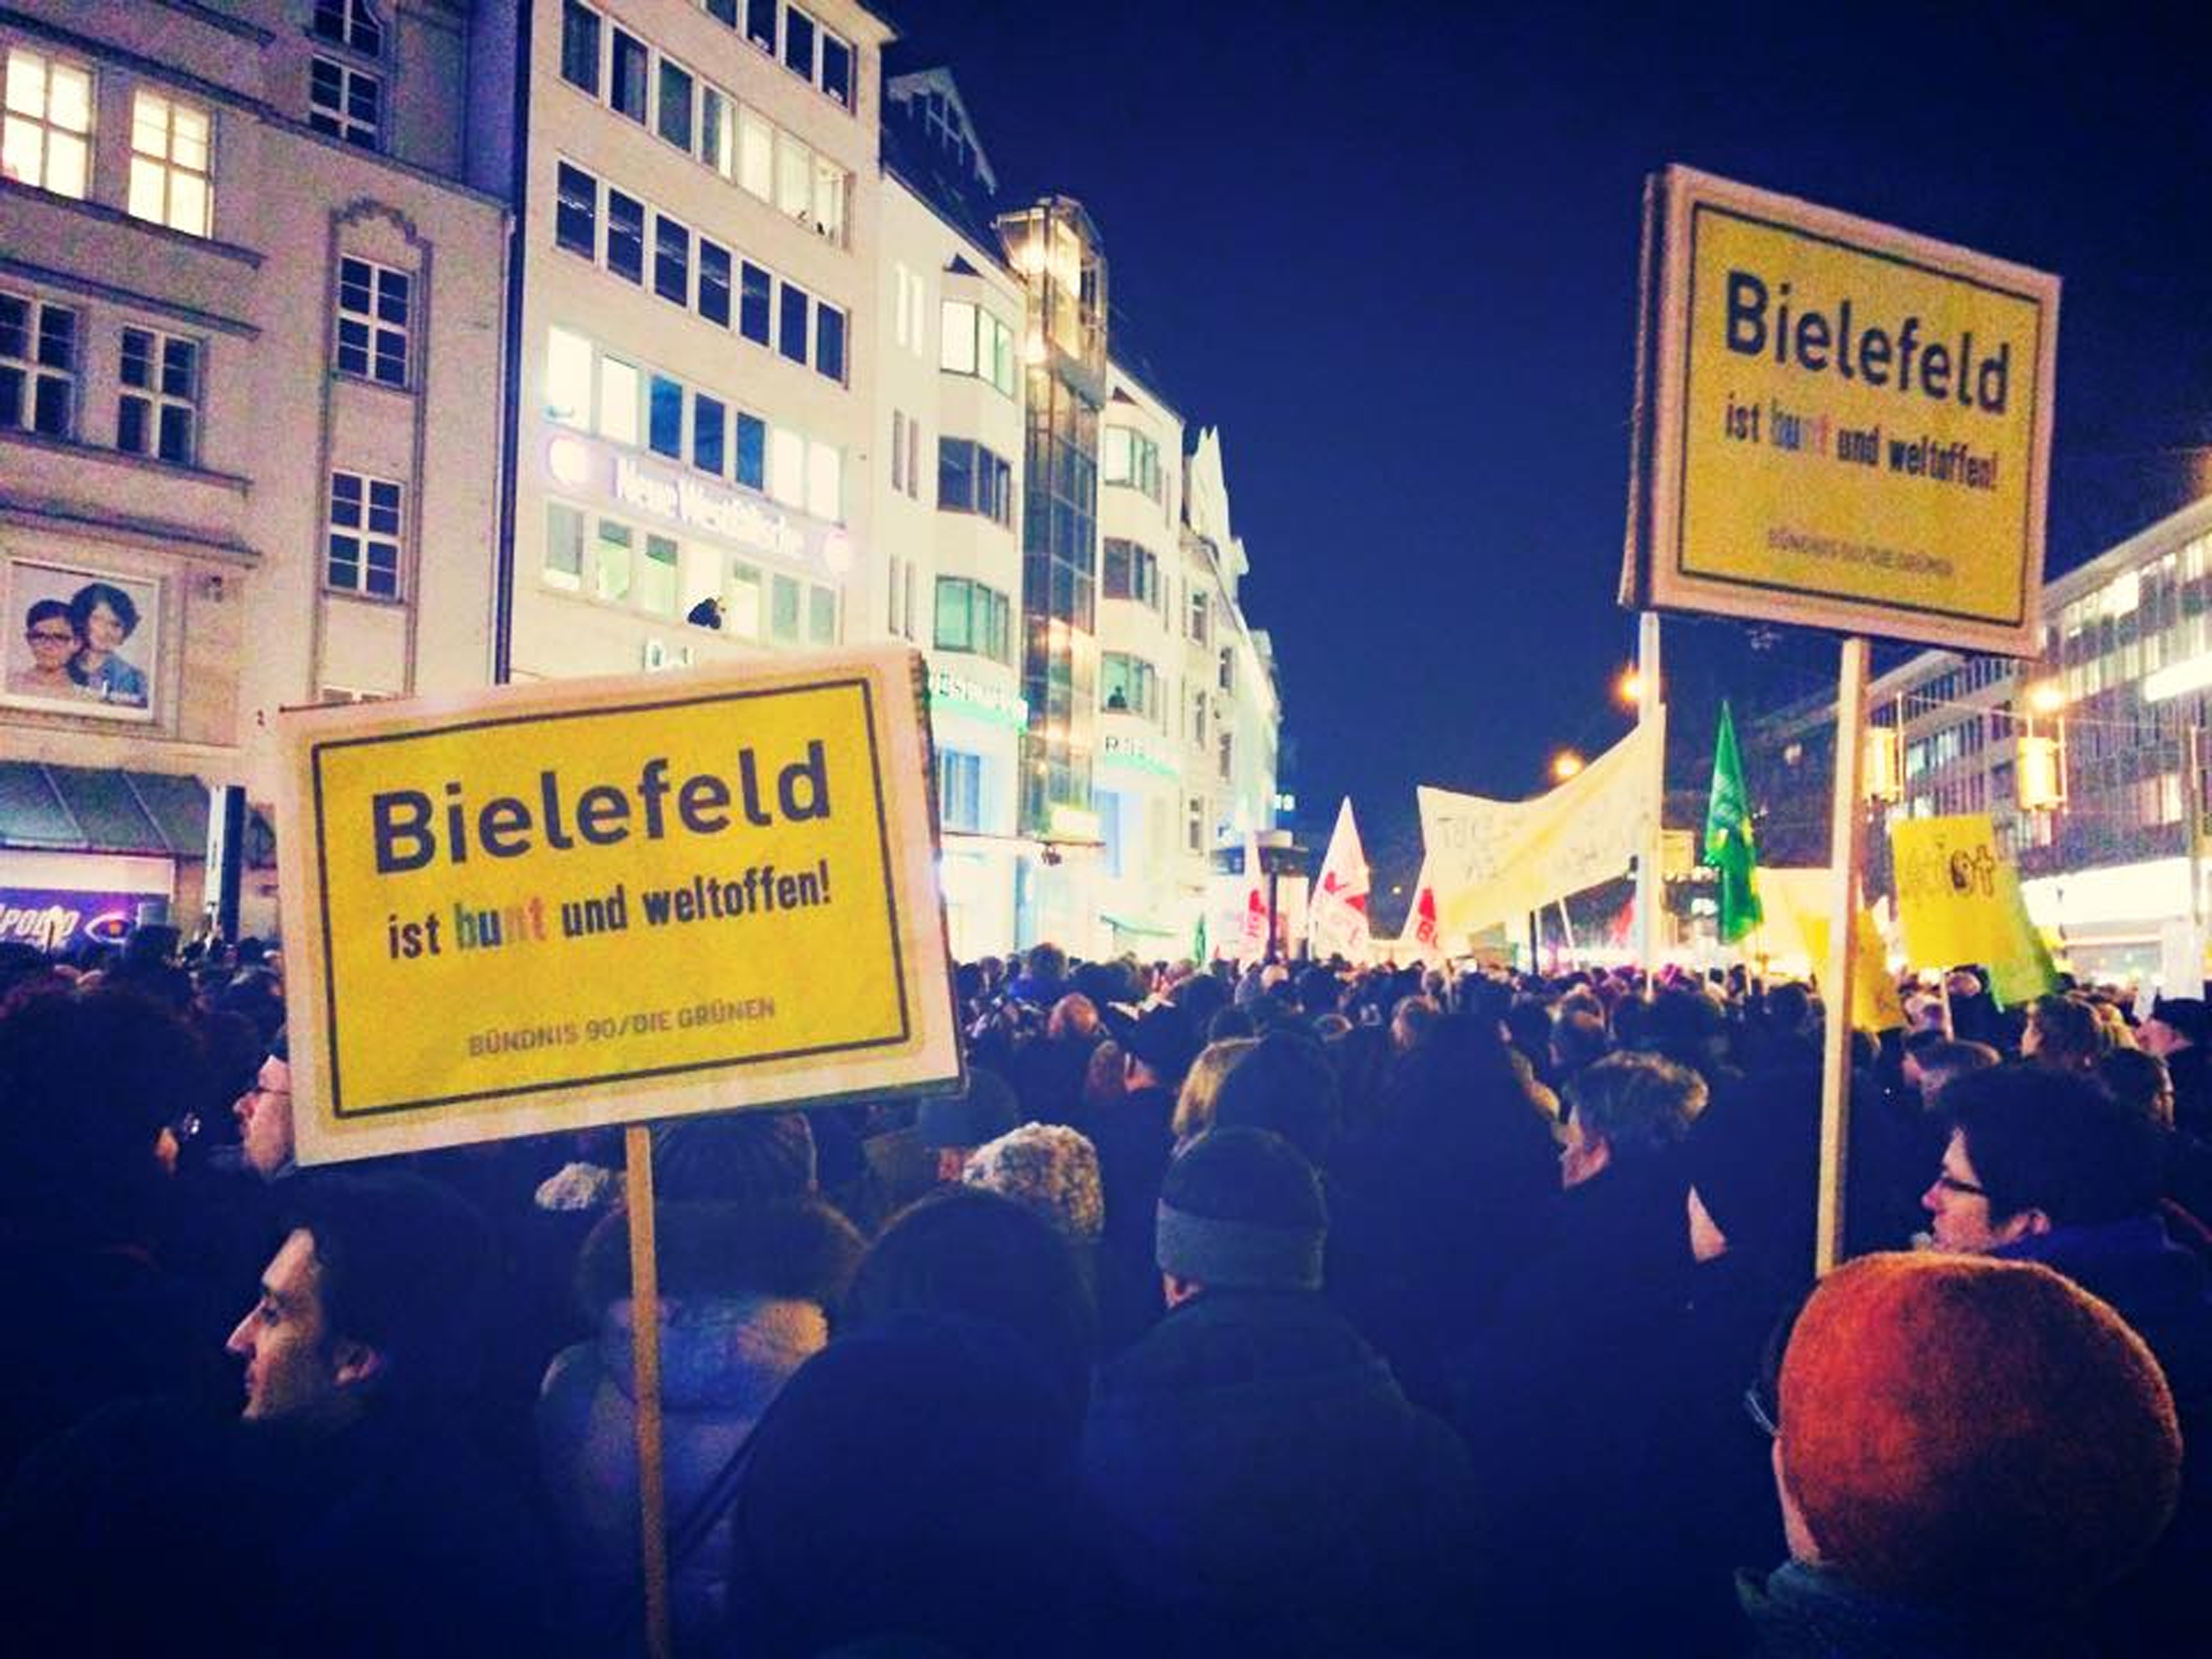 Bielefeld ist bunt und weltoffen – Kundgebung am 20.7.